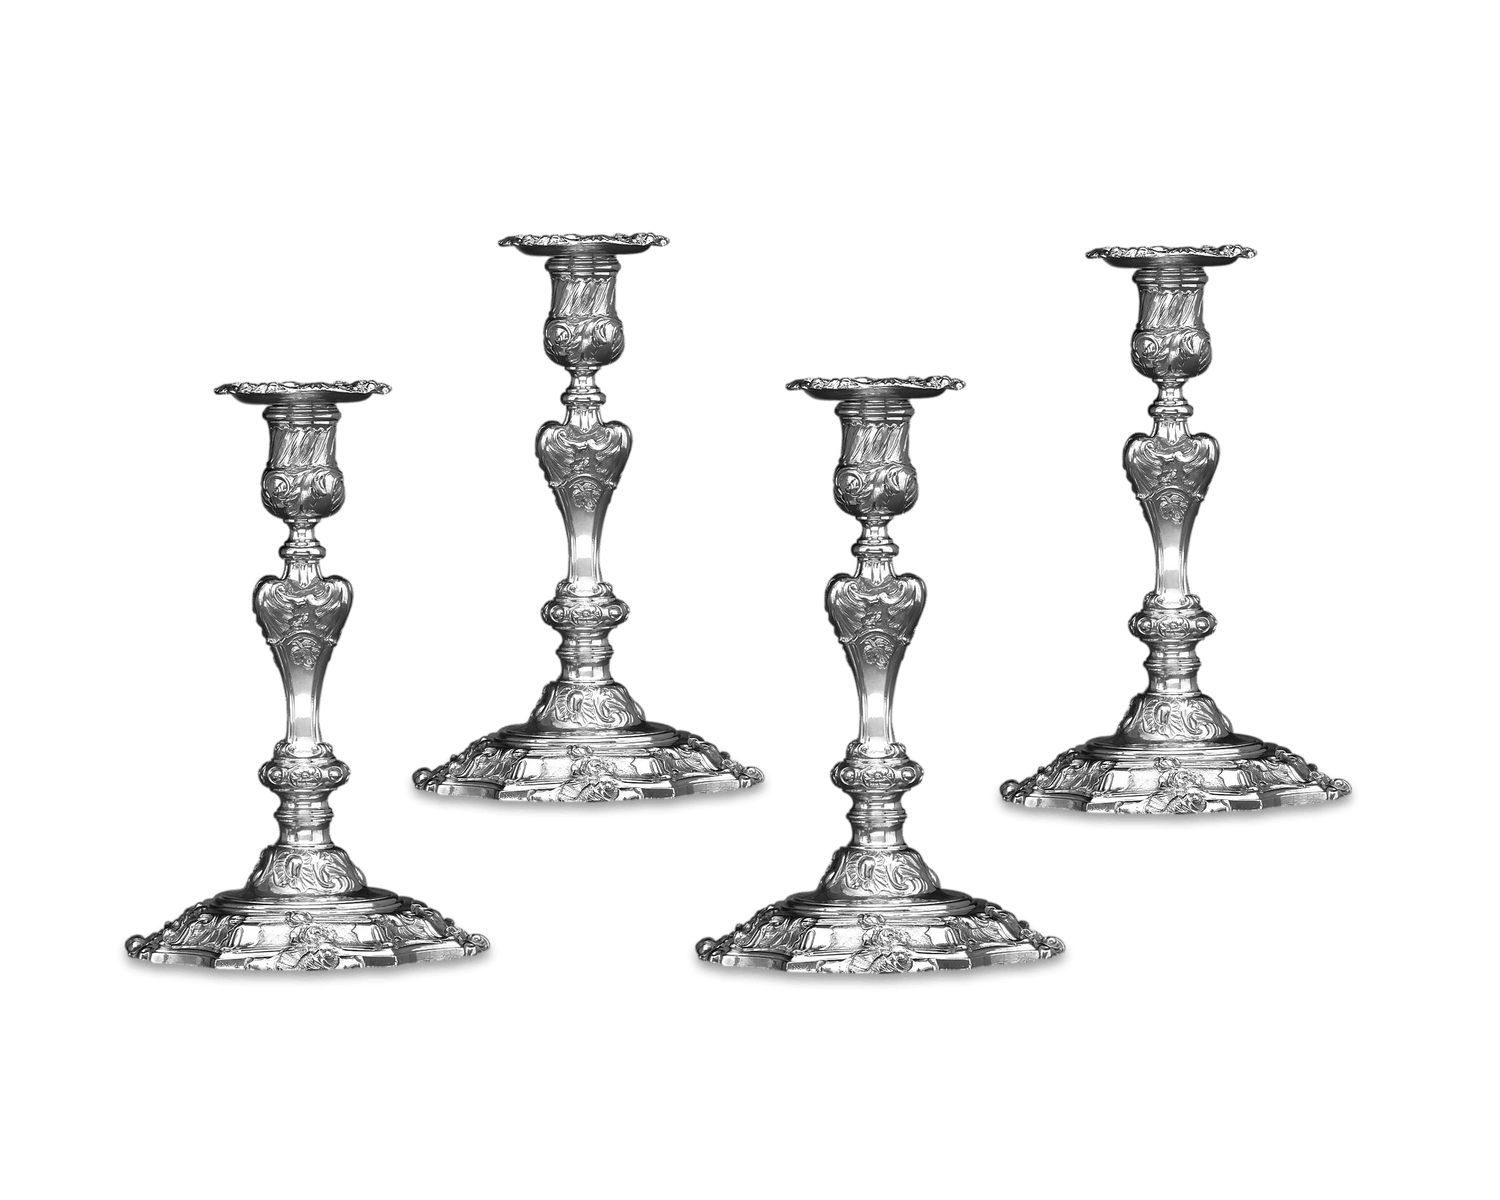 George II Silver Candlesticks by Paul de Lamerie